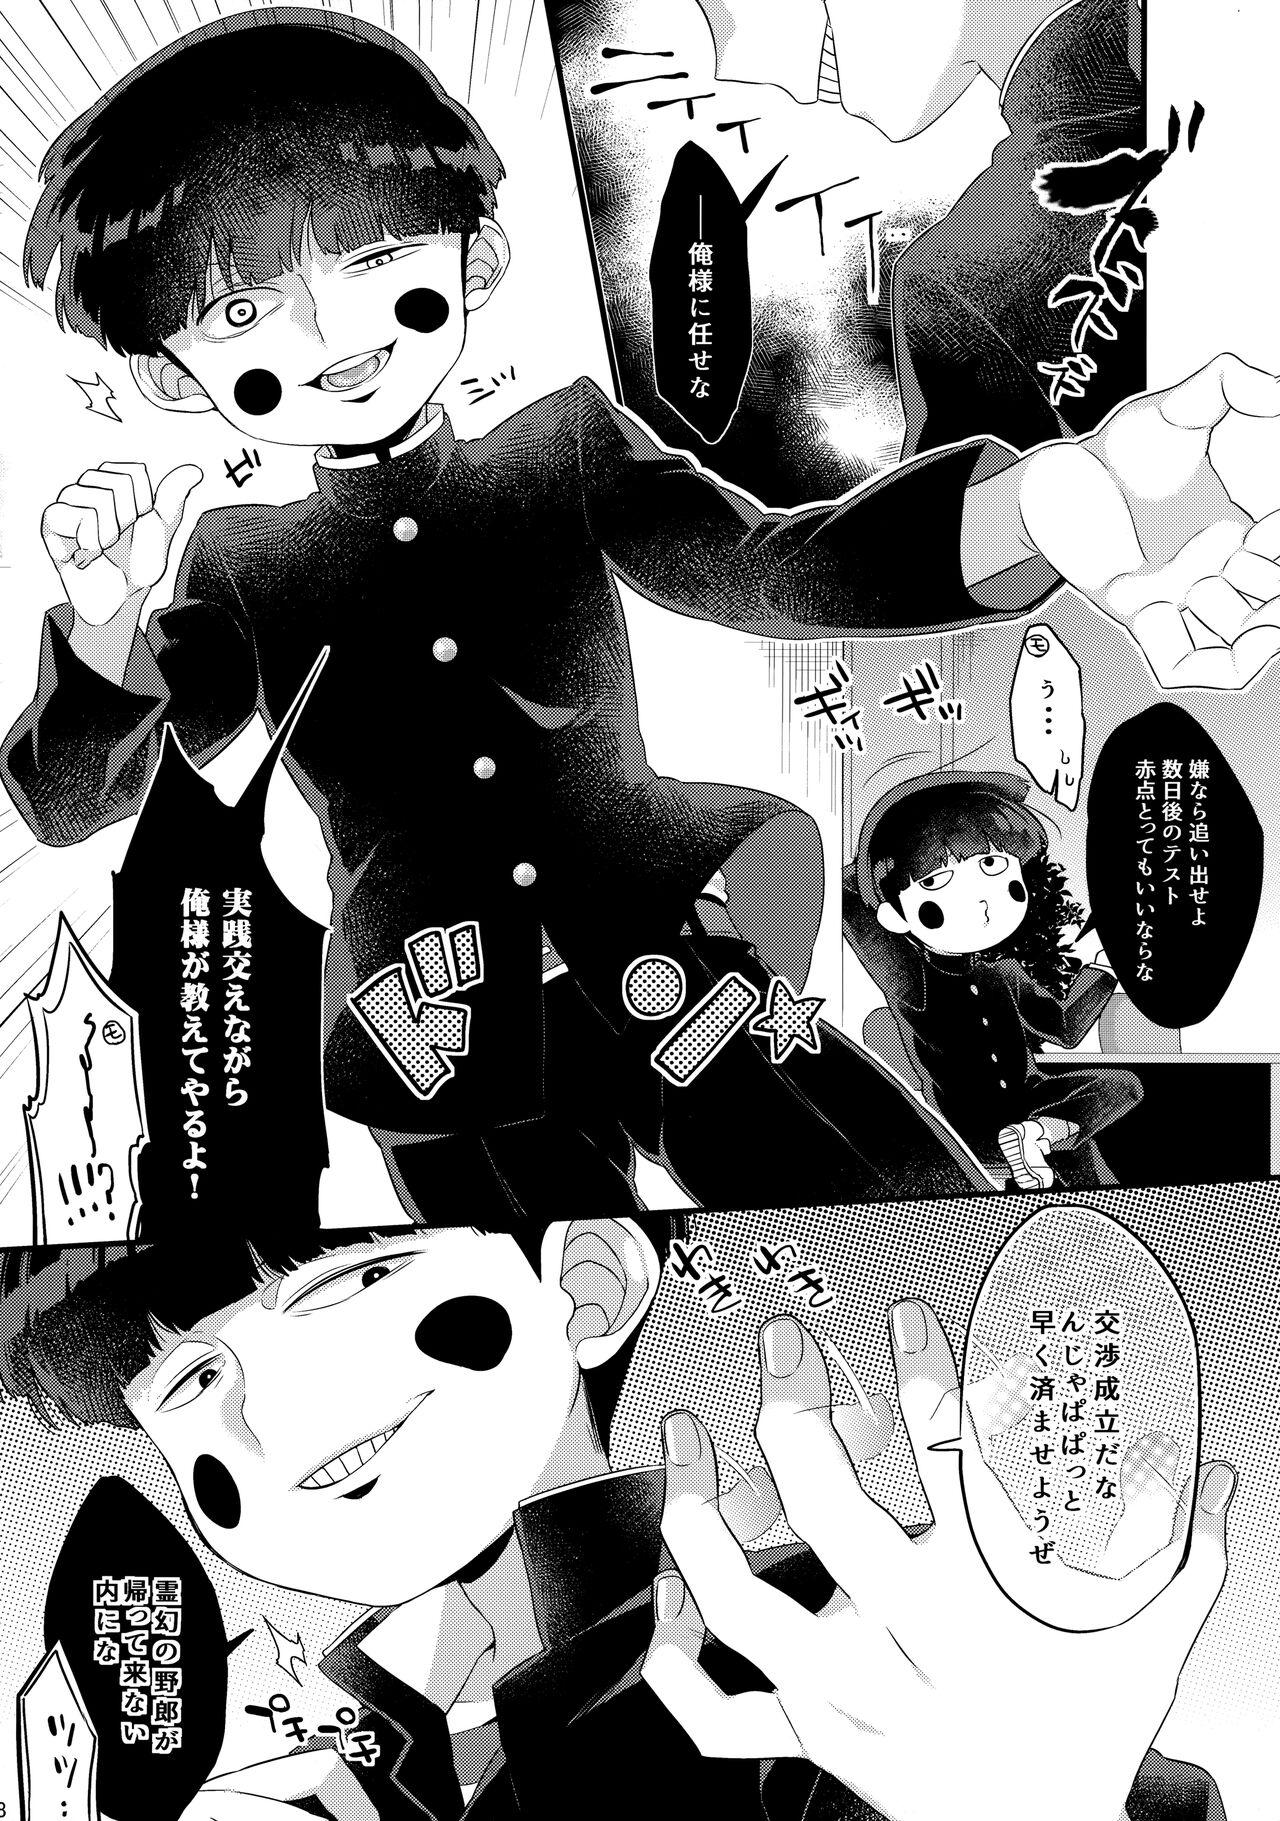 Solo Female Boku ni wa, Sensei ga Futari Iru - Mob psycho 100 Bbw - Page 9